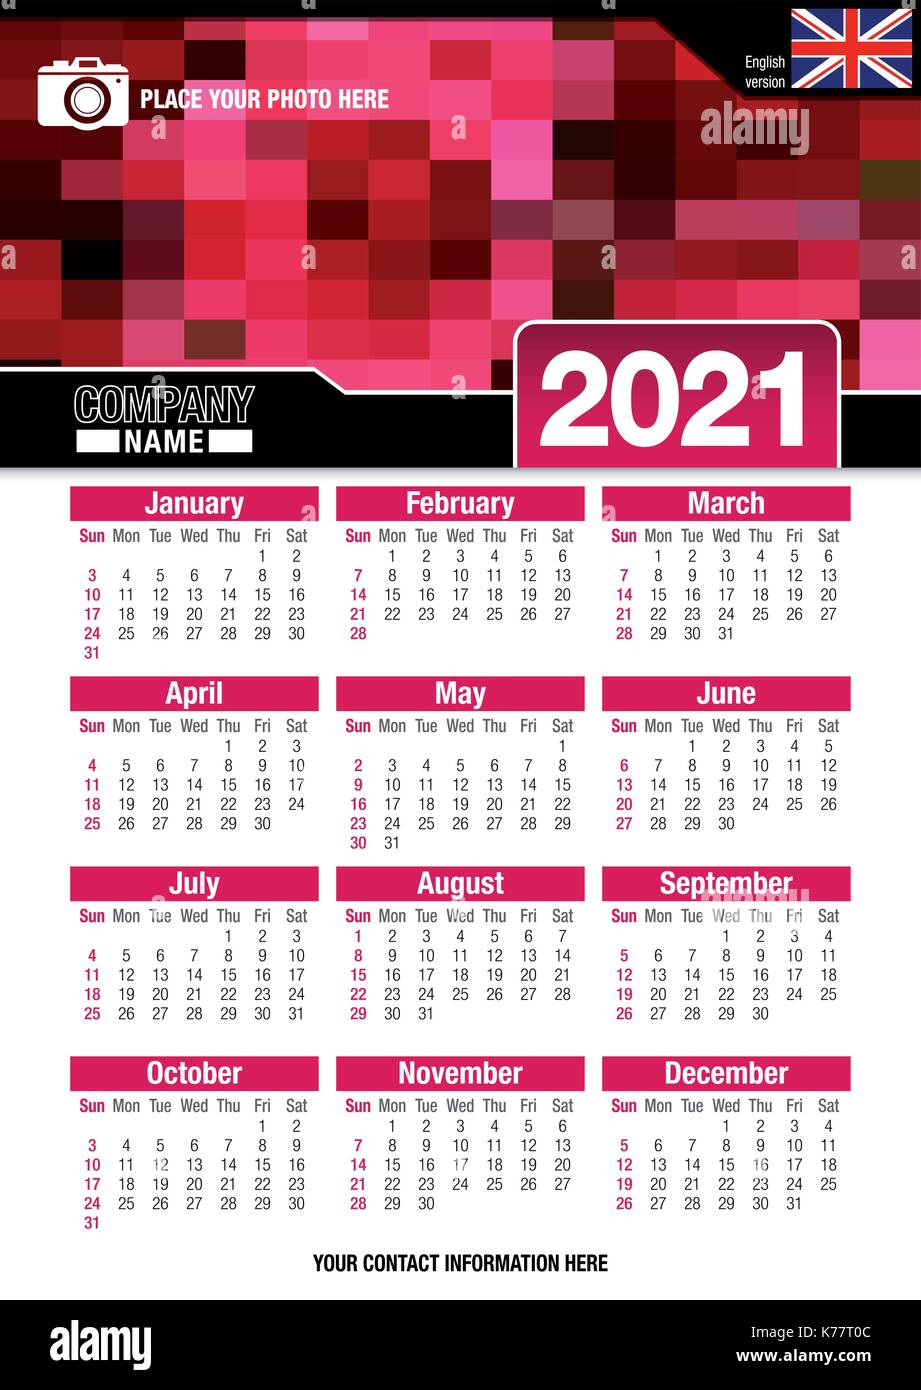 Utile calendario da parete 2021 con design di colori rosso mosaico. Formato A4 verticale. Dimensioni: 210mm x 297mm. Versione Inglese - immagine vettoriale Illustrazione Vettoriale